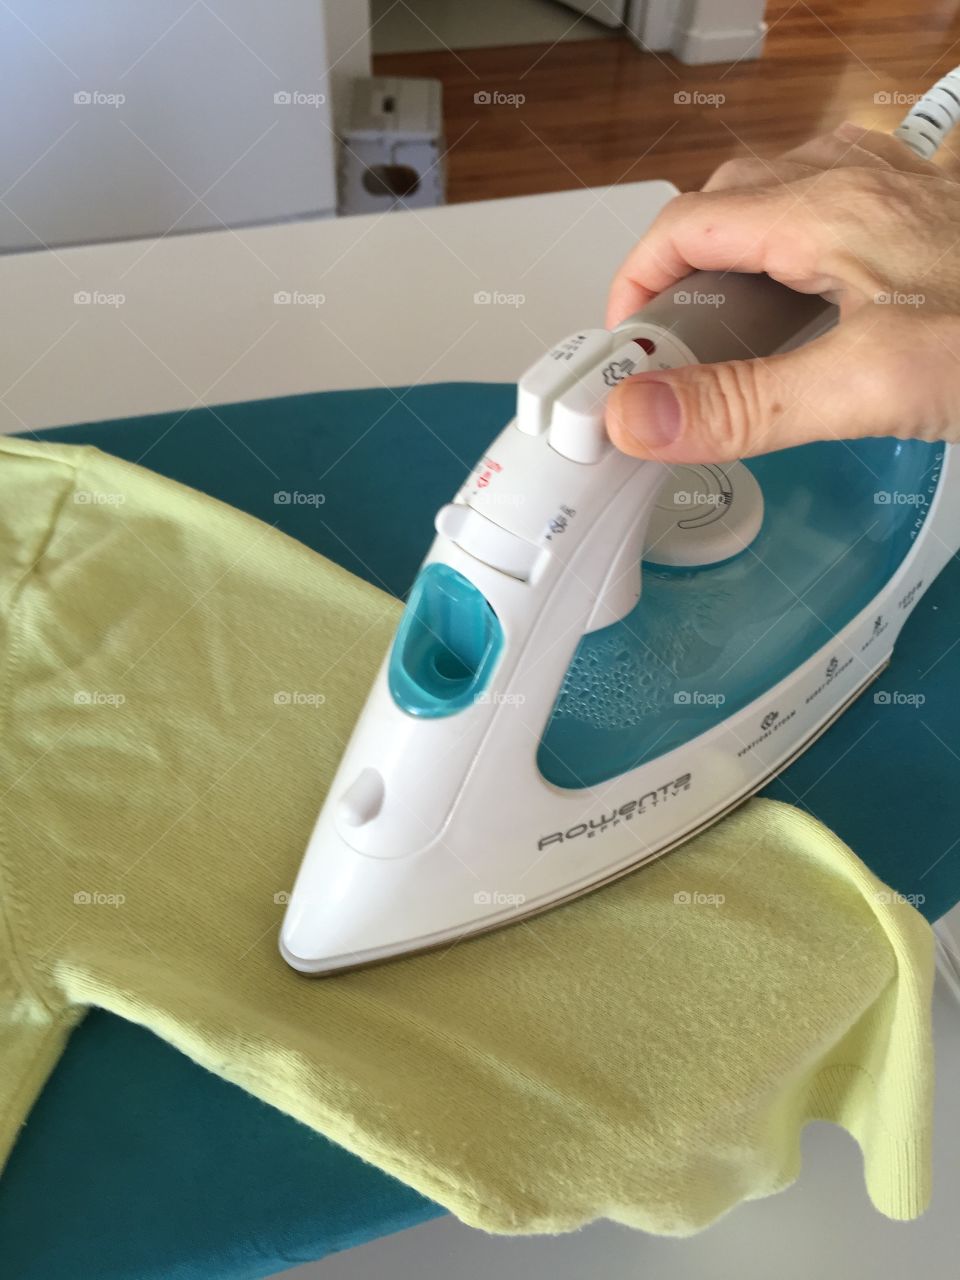 Ironing housework